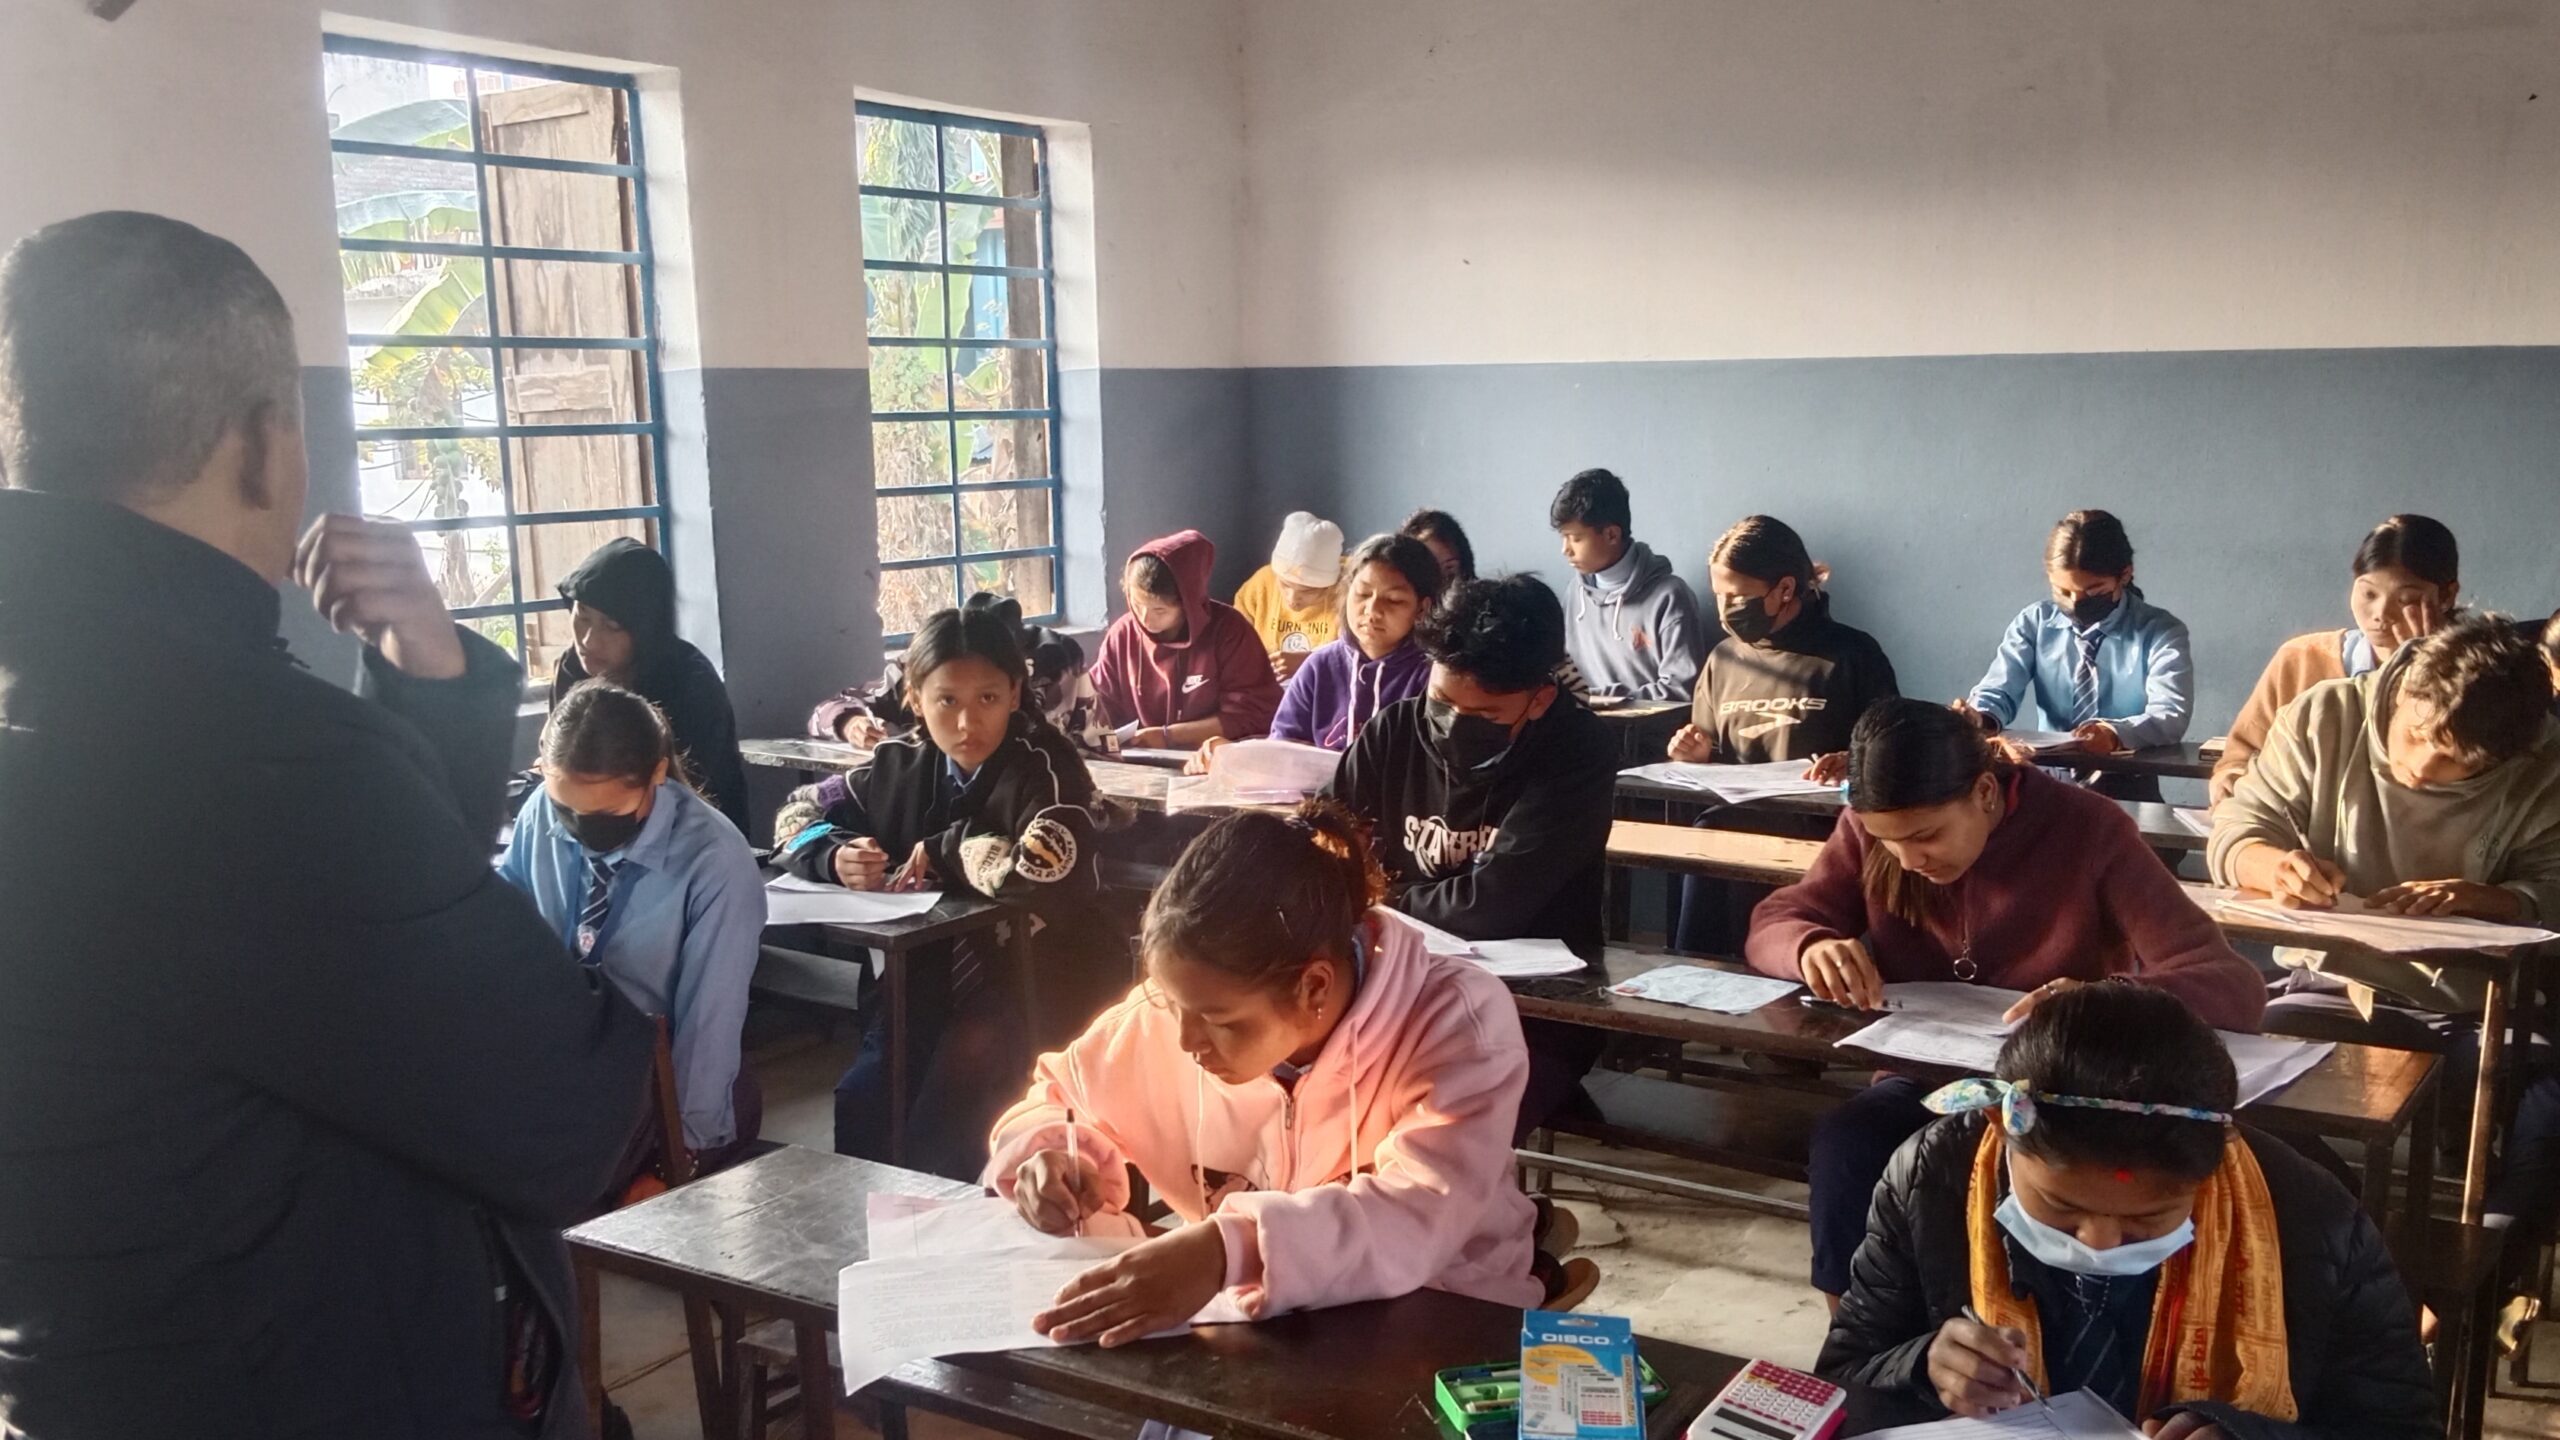 काेहलपुरका सामुदायिक विद्यालयमा एस. ई. ई.परीक्षा लक्षित “माेक टेस्ट “संचालनमा